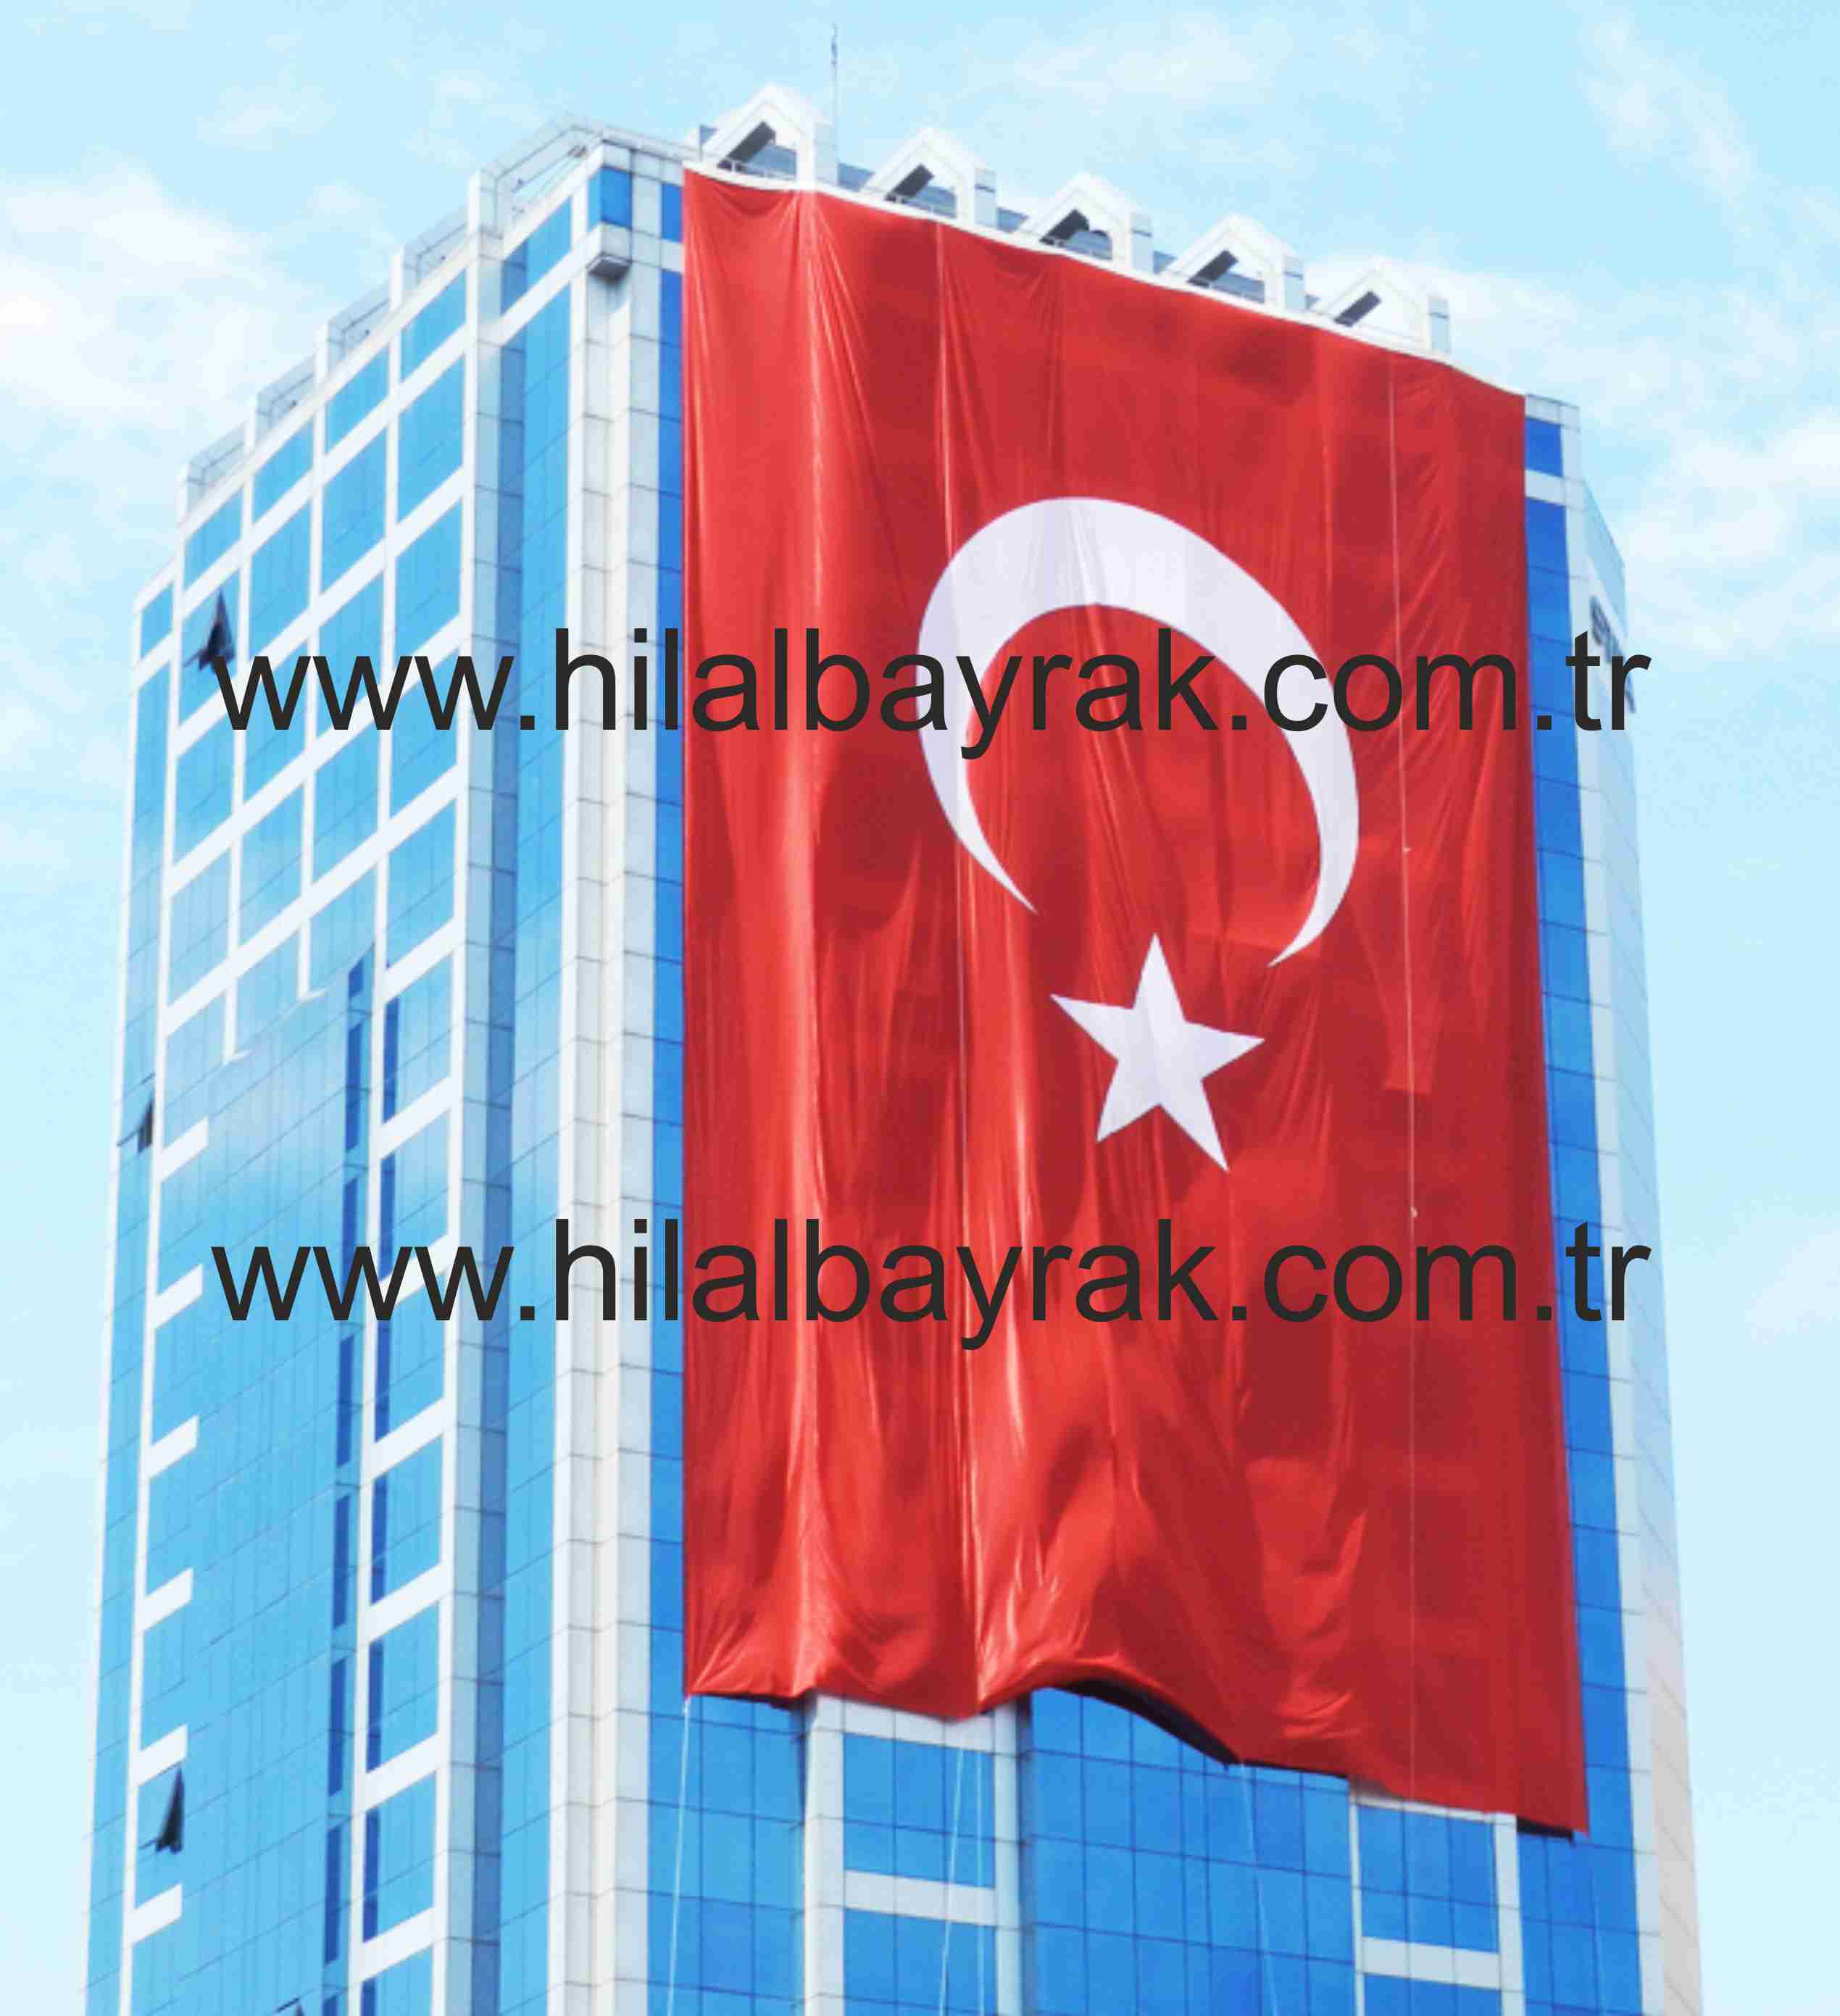 türk bayrak Türk Bayrağı ümraniye türk bayrak Ümraniye Türk Bayrakları türk bayrak imaları türk bayrak üretimi imalatı ümraniye